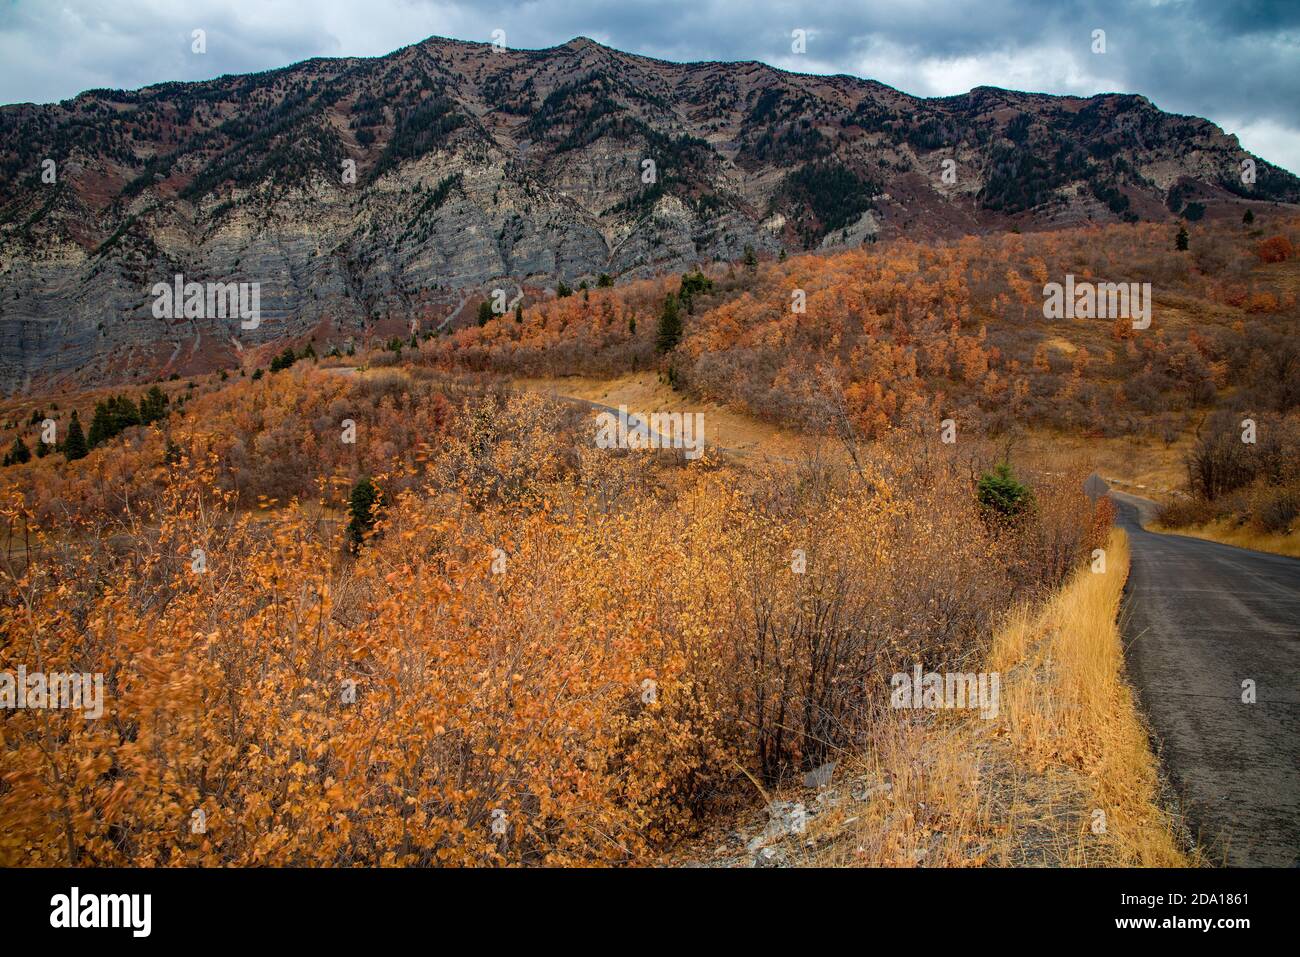 Die hohen Granitgipfel und Klippen im Norden Utahs, USA, sind im Herbst spektakulär. Die Bergstraße bietet endlose Panoramablicke auf die Bergkette. Stockfoto